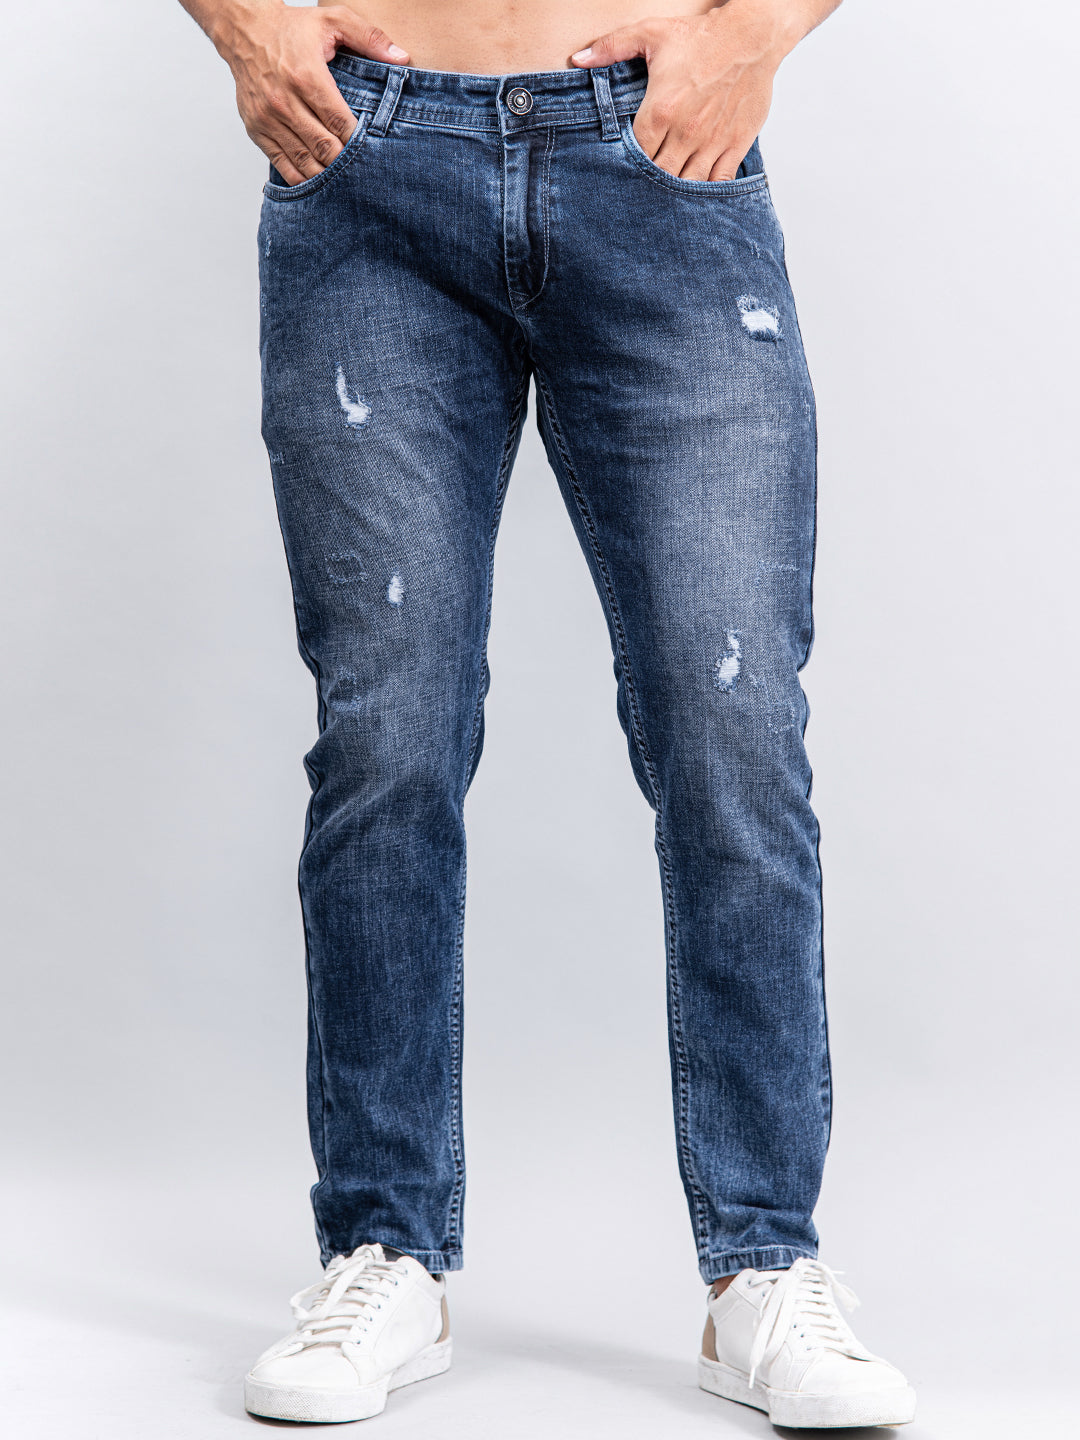 फैंसी और मॉडर्न लुक के लिए स्टाइल में ऐड करें ये Damage Jeans, दिखेंगे  ज्यादा अट्रैक्टिव - damage jeans for men to get funky and modern style -  Navbharat Times